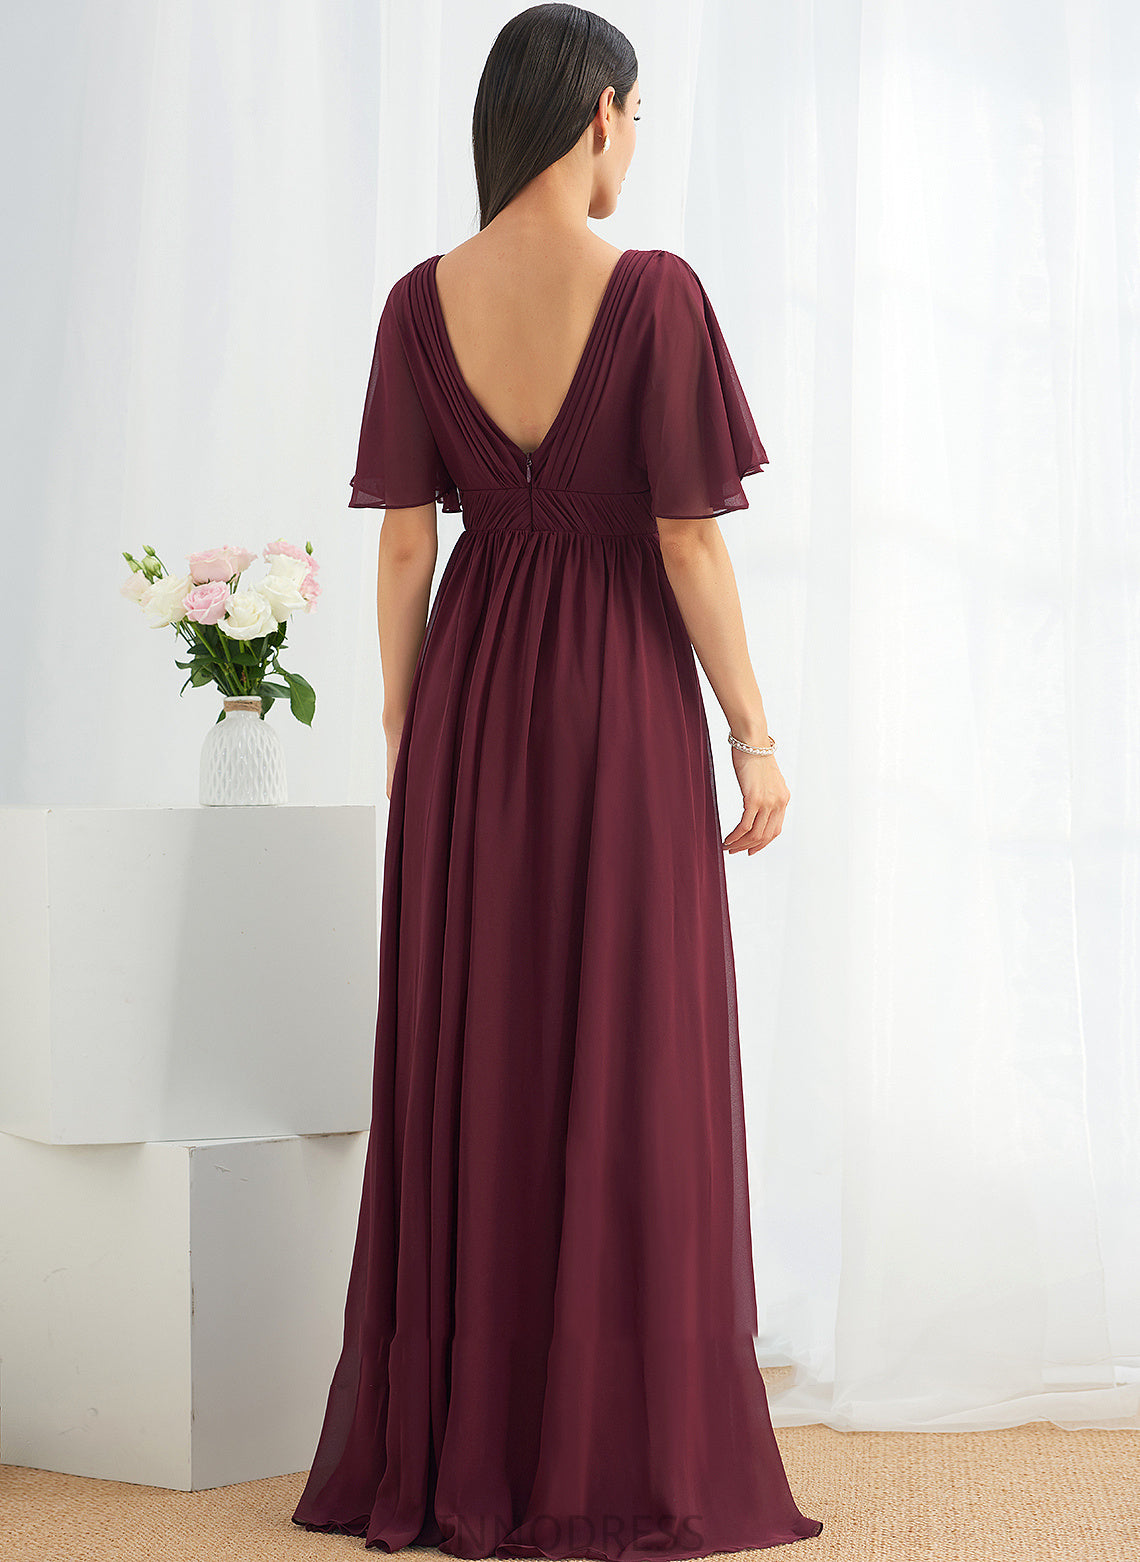 Embellishment Neckline V-neck Silhouette Floor-Length Fabric Length A-Line Ruffle Adrienne A-Line/Princess Sleeveless